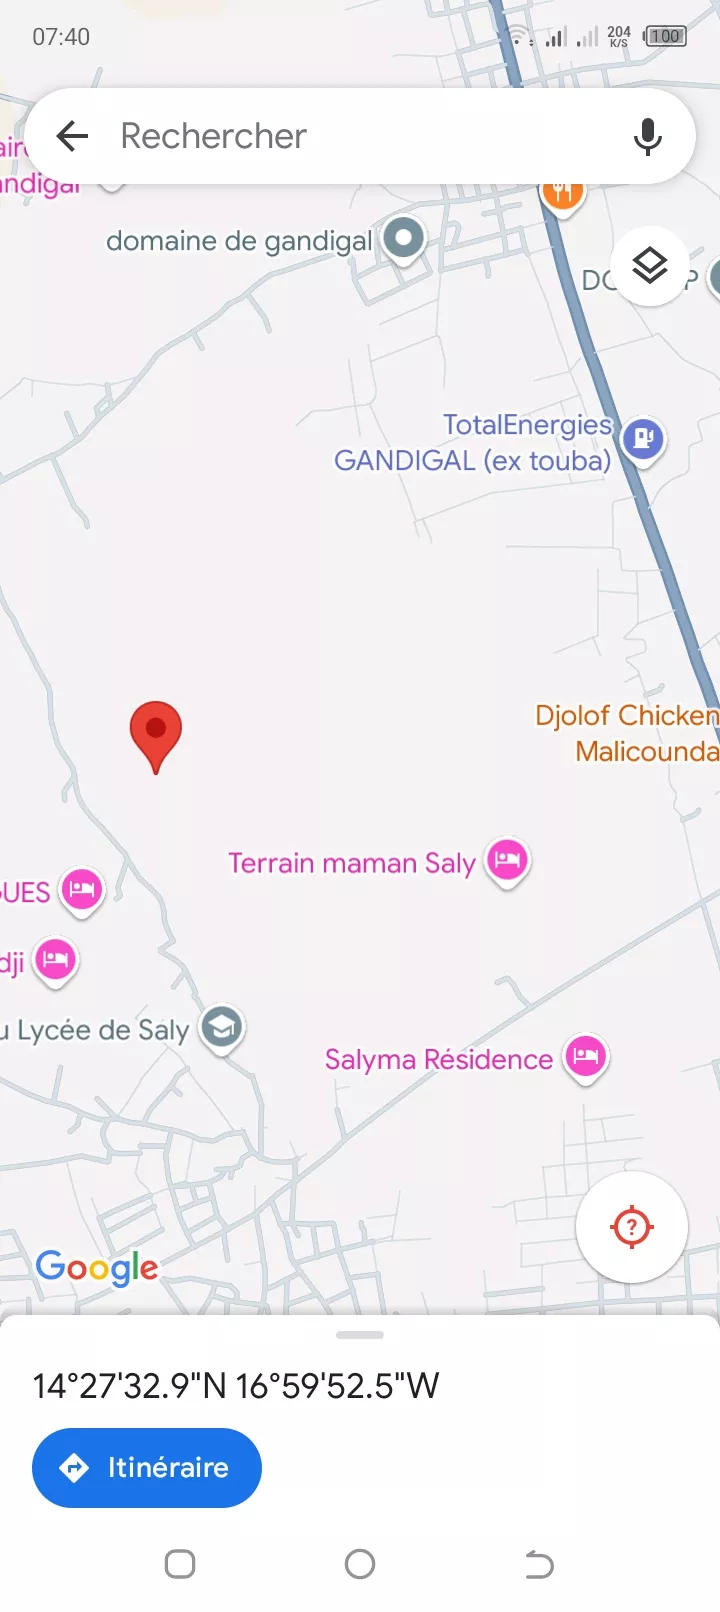 Terrain 300 mètres carrés à Saly à 10000000 - Petites annonces gratuites - Achat et vente à Mbour, Sénégal